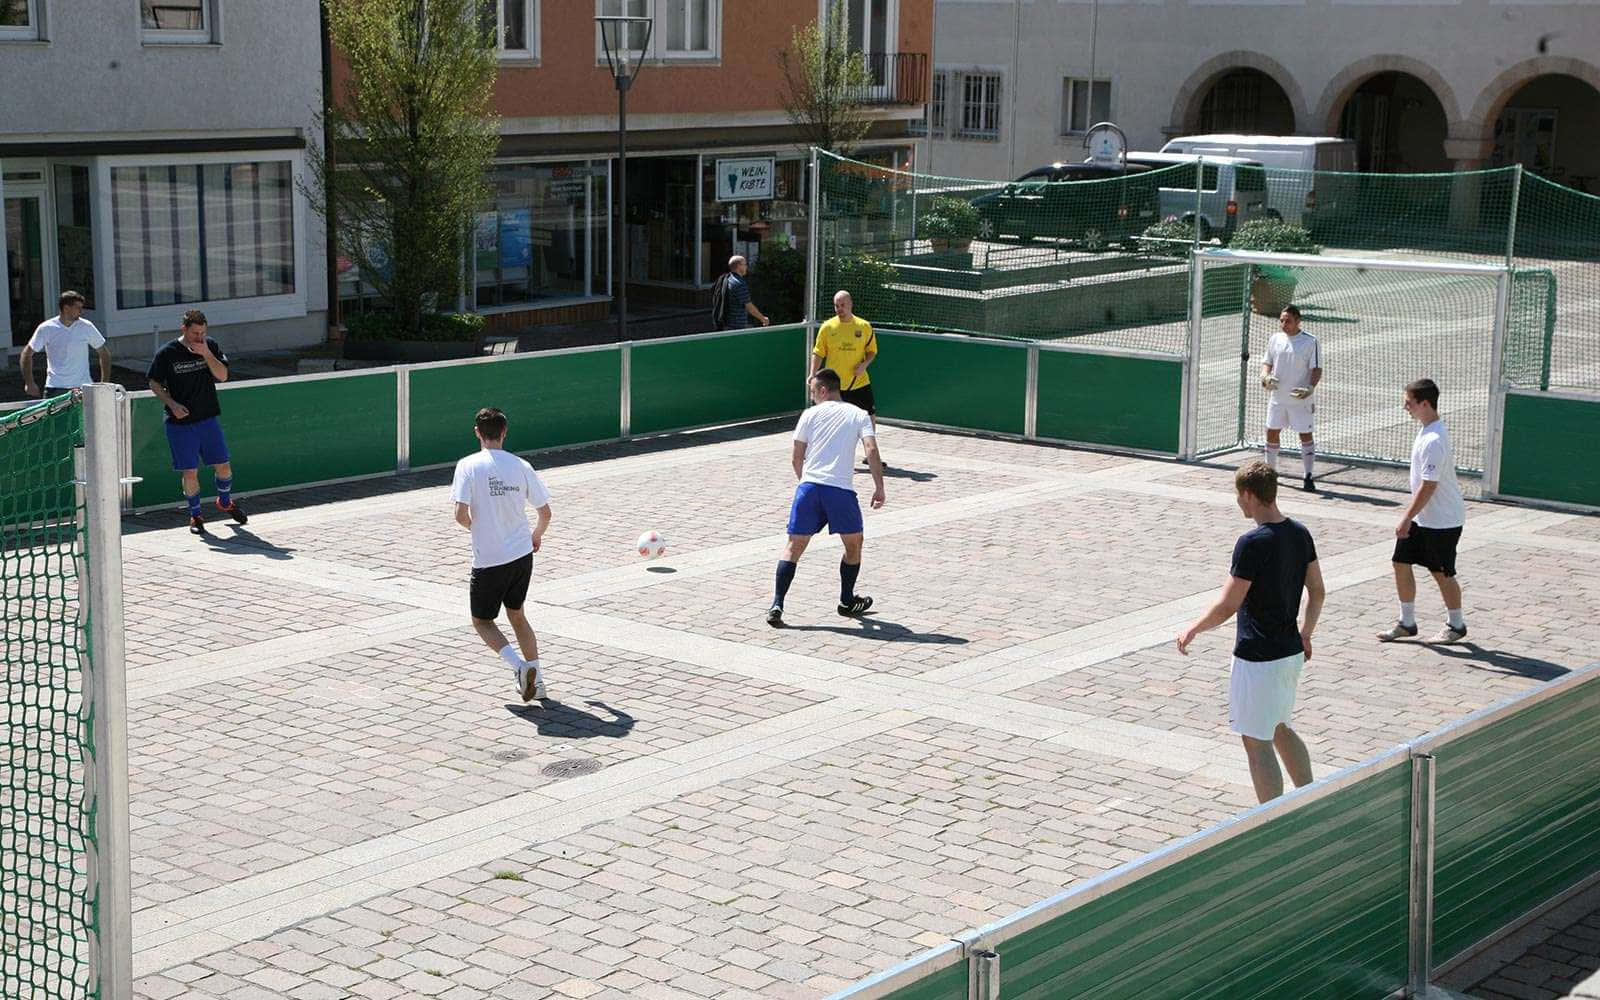 Urban Street Soccer Game.jpg Wallpaper